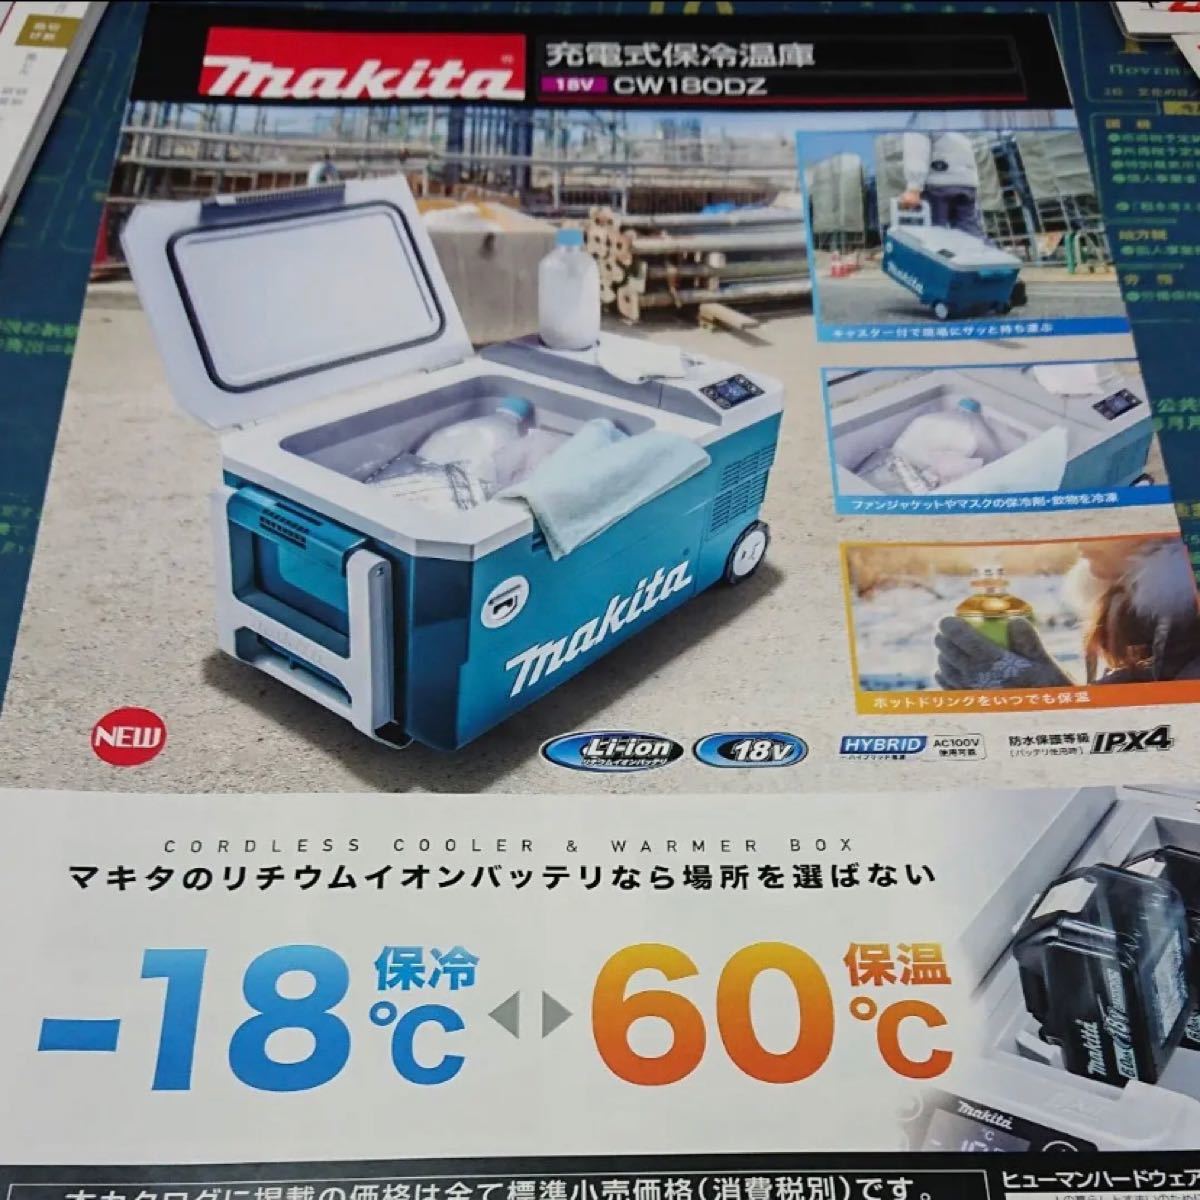  マキタ18V 充電式保冷温庫